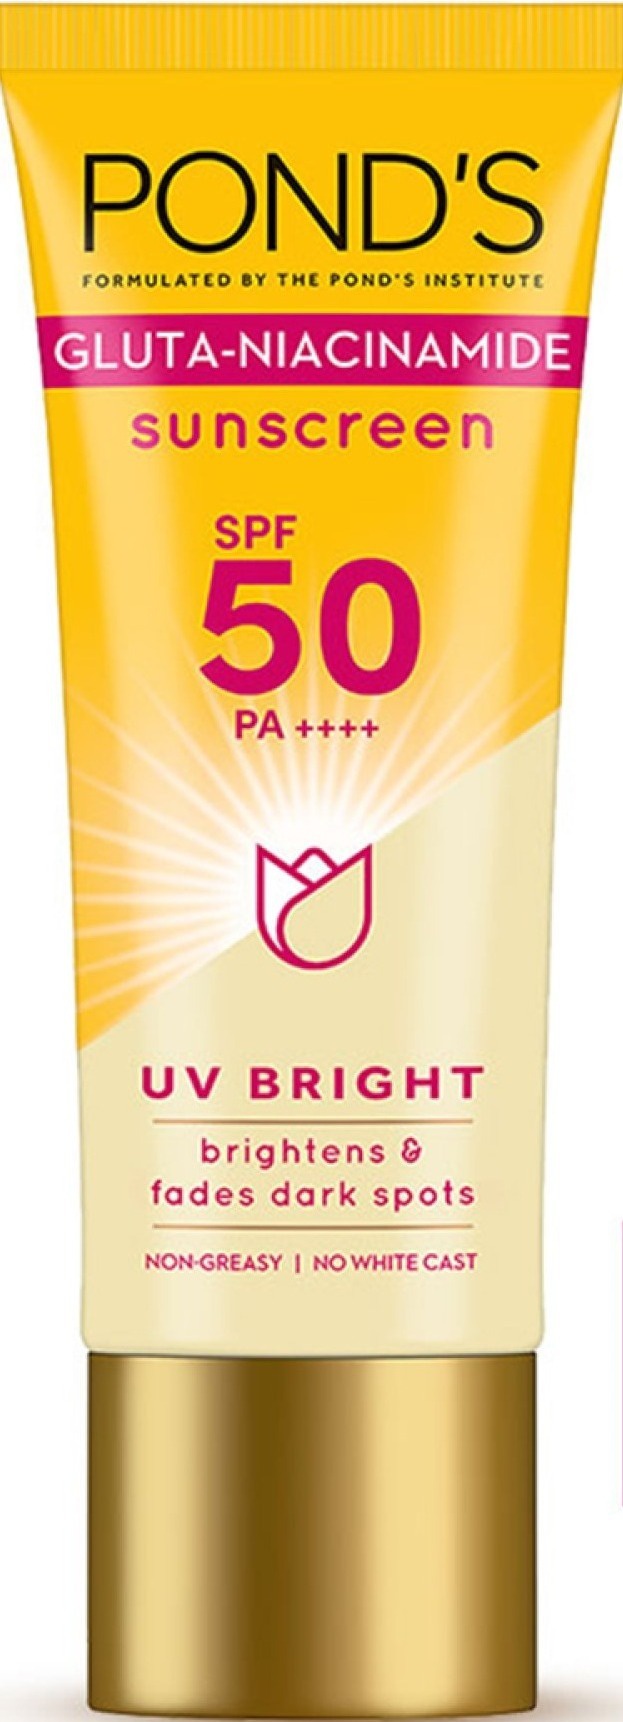 Pond's Gluta-niacinamide Sunscreen SPF 50 Pa ++++ UV Bright